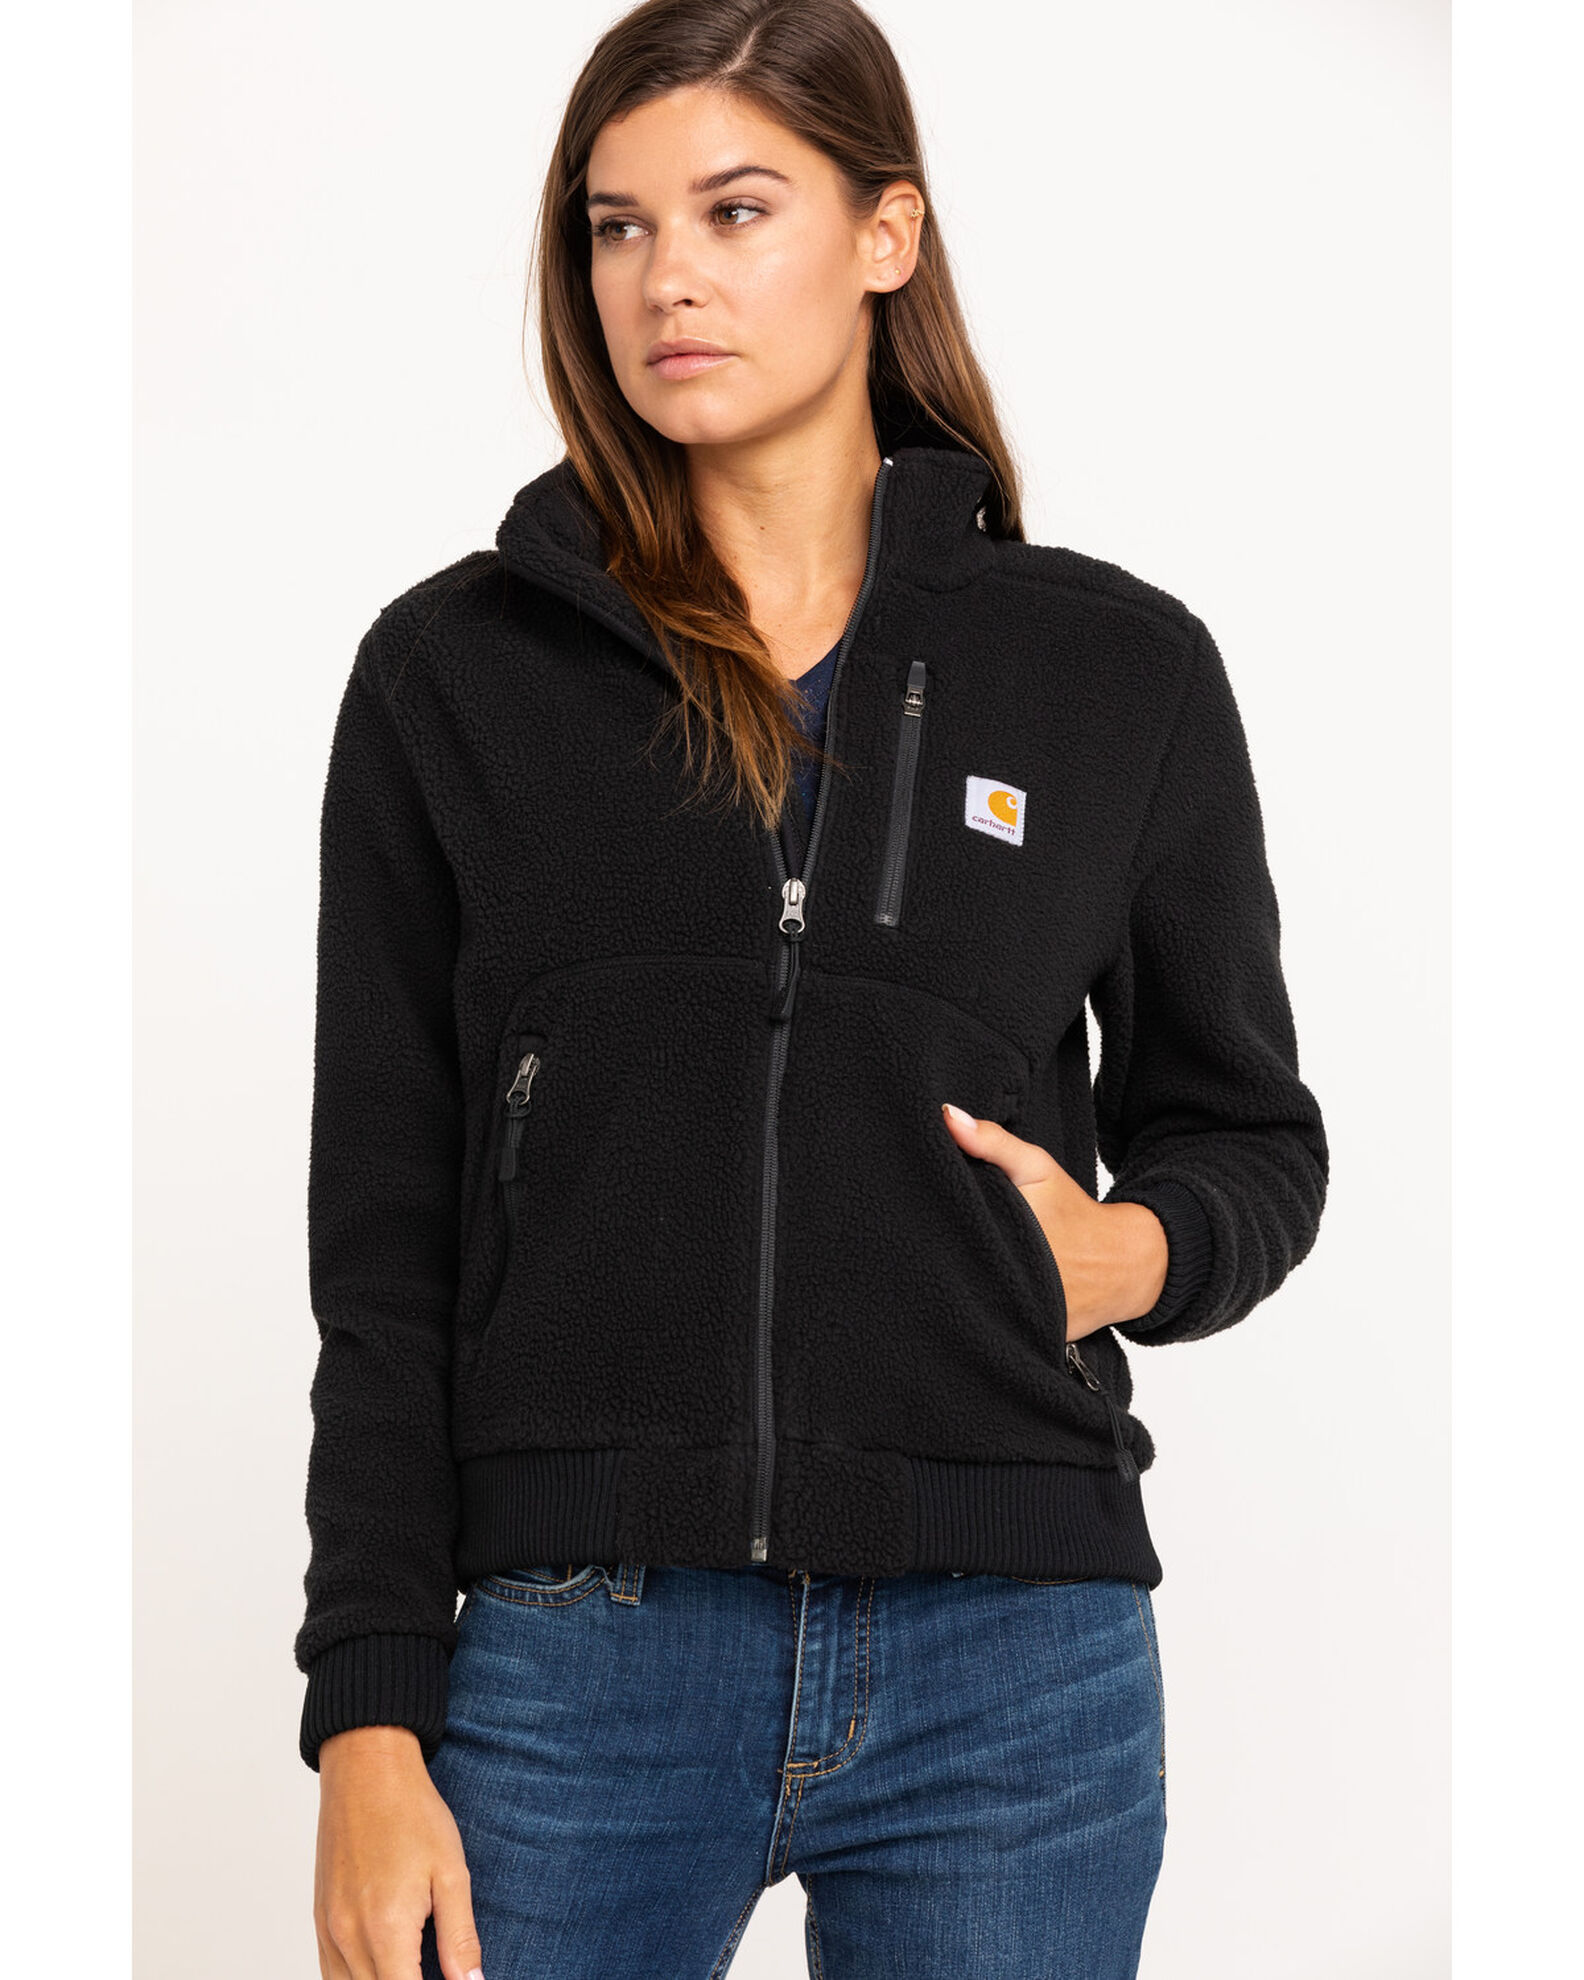 Carhartt Women's High Pile Fleece Jacket